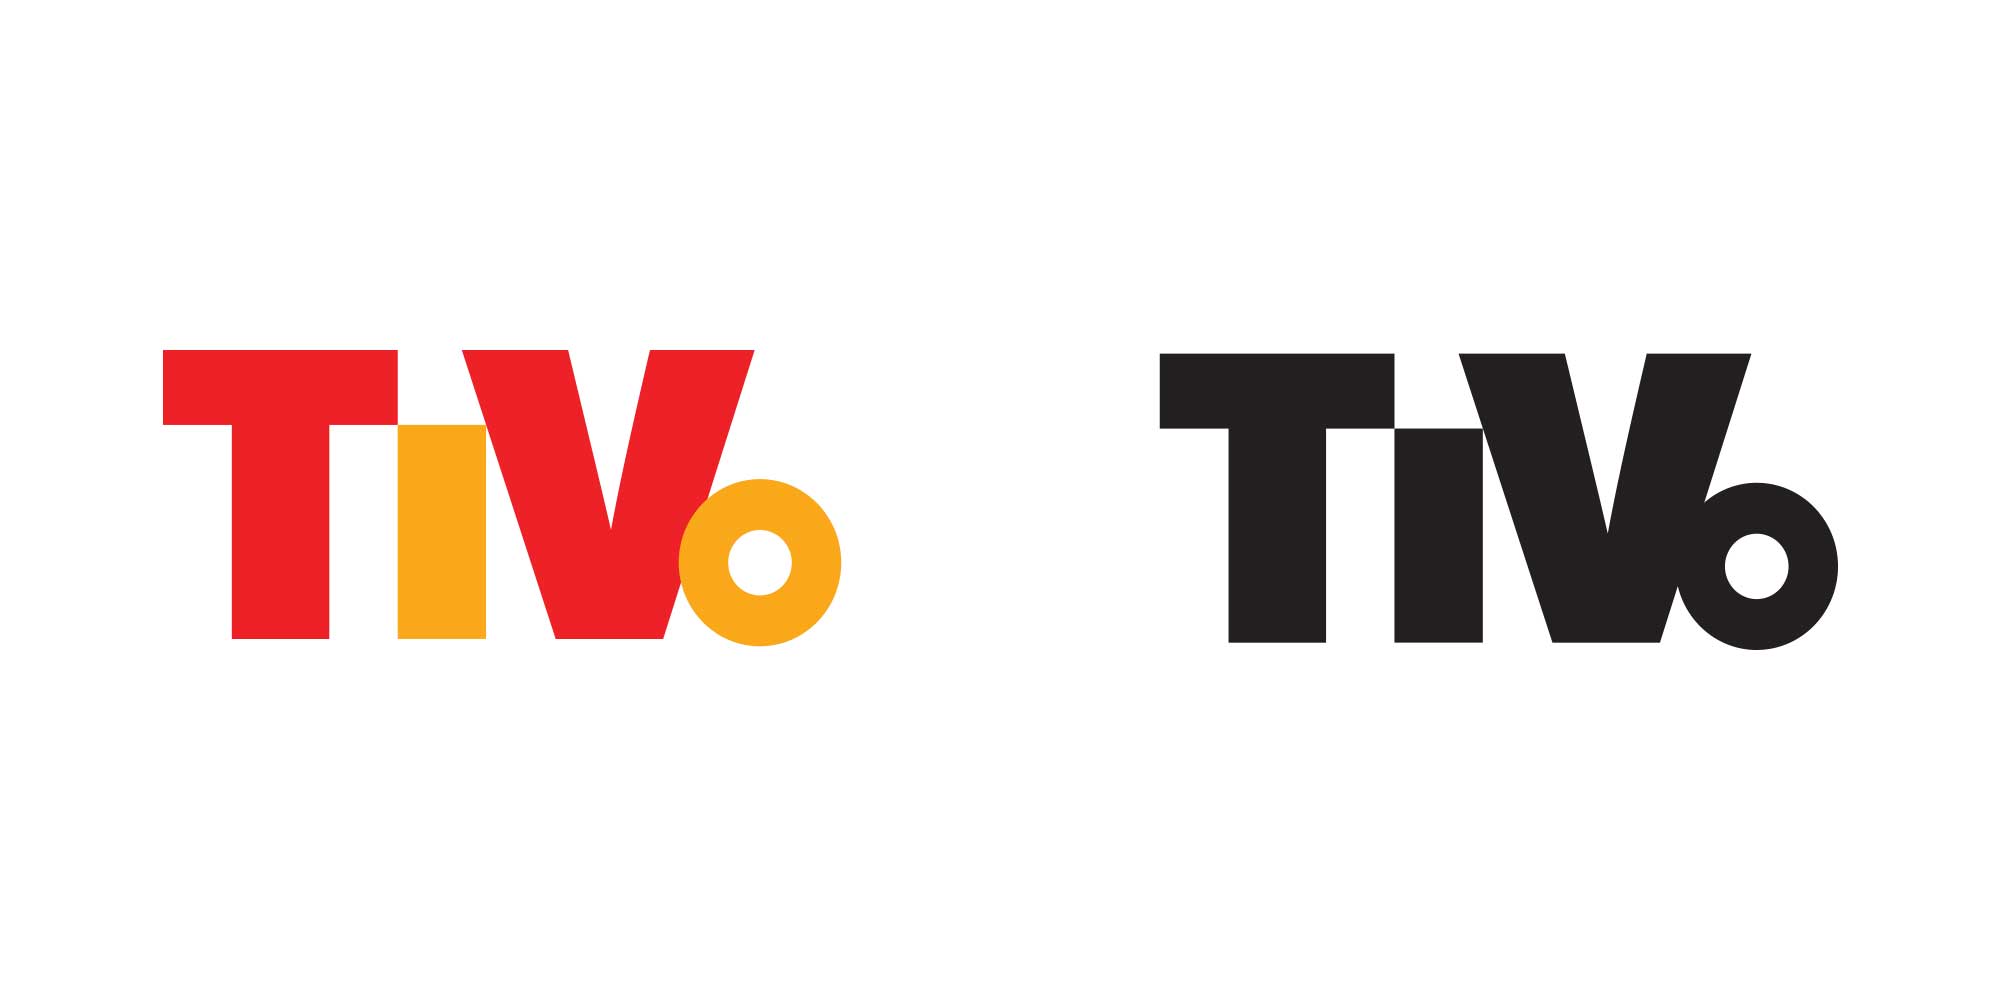 TiVo Logo - Able Parris - TiVo-logo-redesign